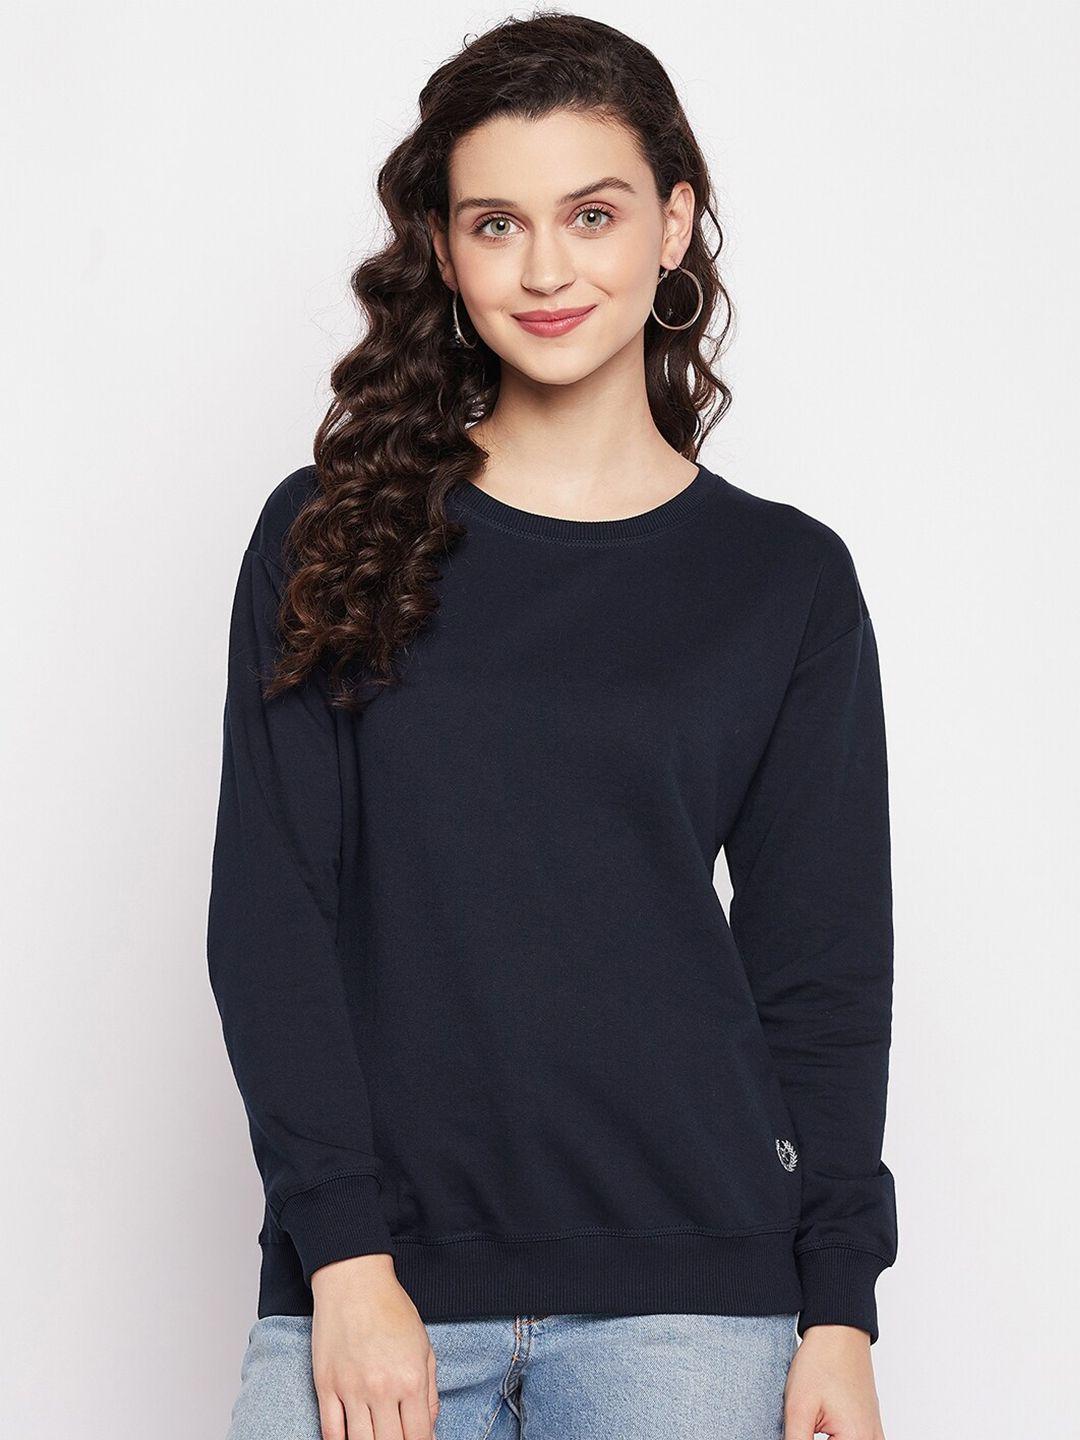 firstkrush women navy blue round neck cotton sweatshirt